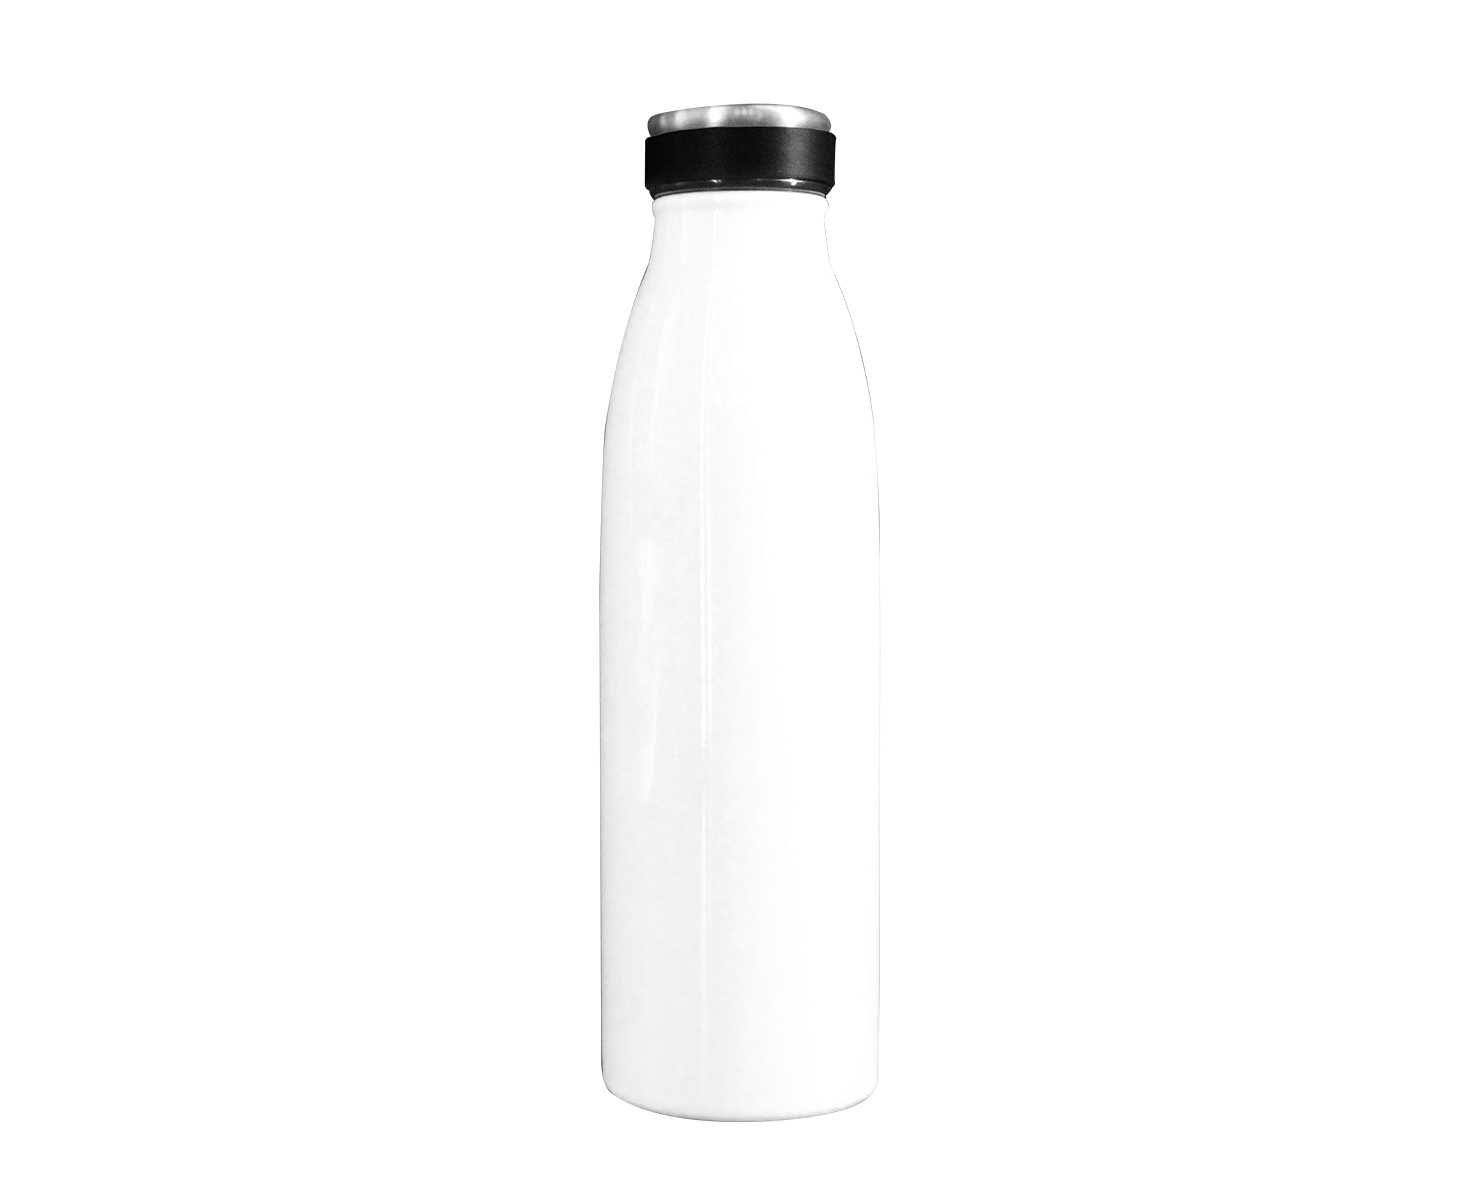 BOTELLA ARCERO TIPO LECHERO KAHLO 500ML, Botella de acero estilo lechero para sublimación con capacidad de 500 ml